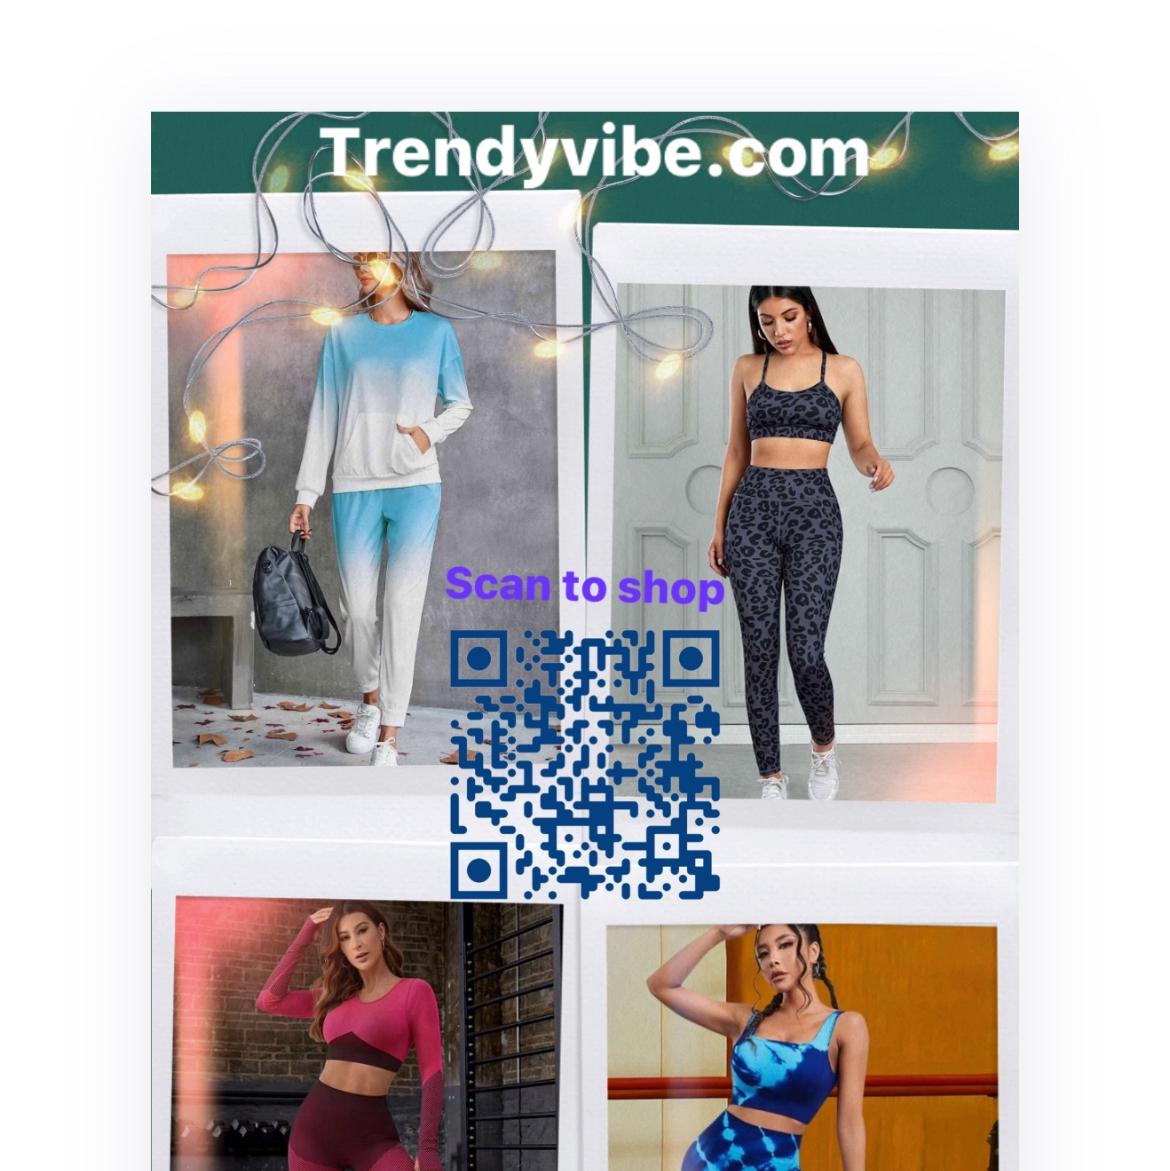 Trendyvibe.com